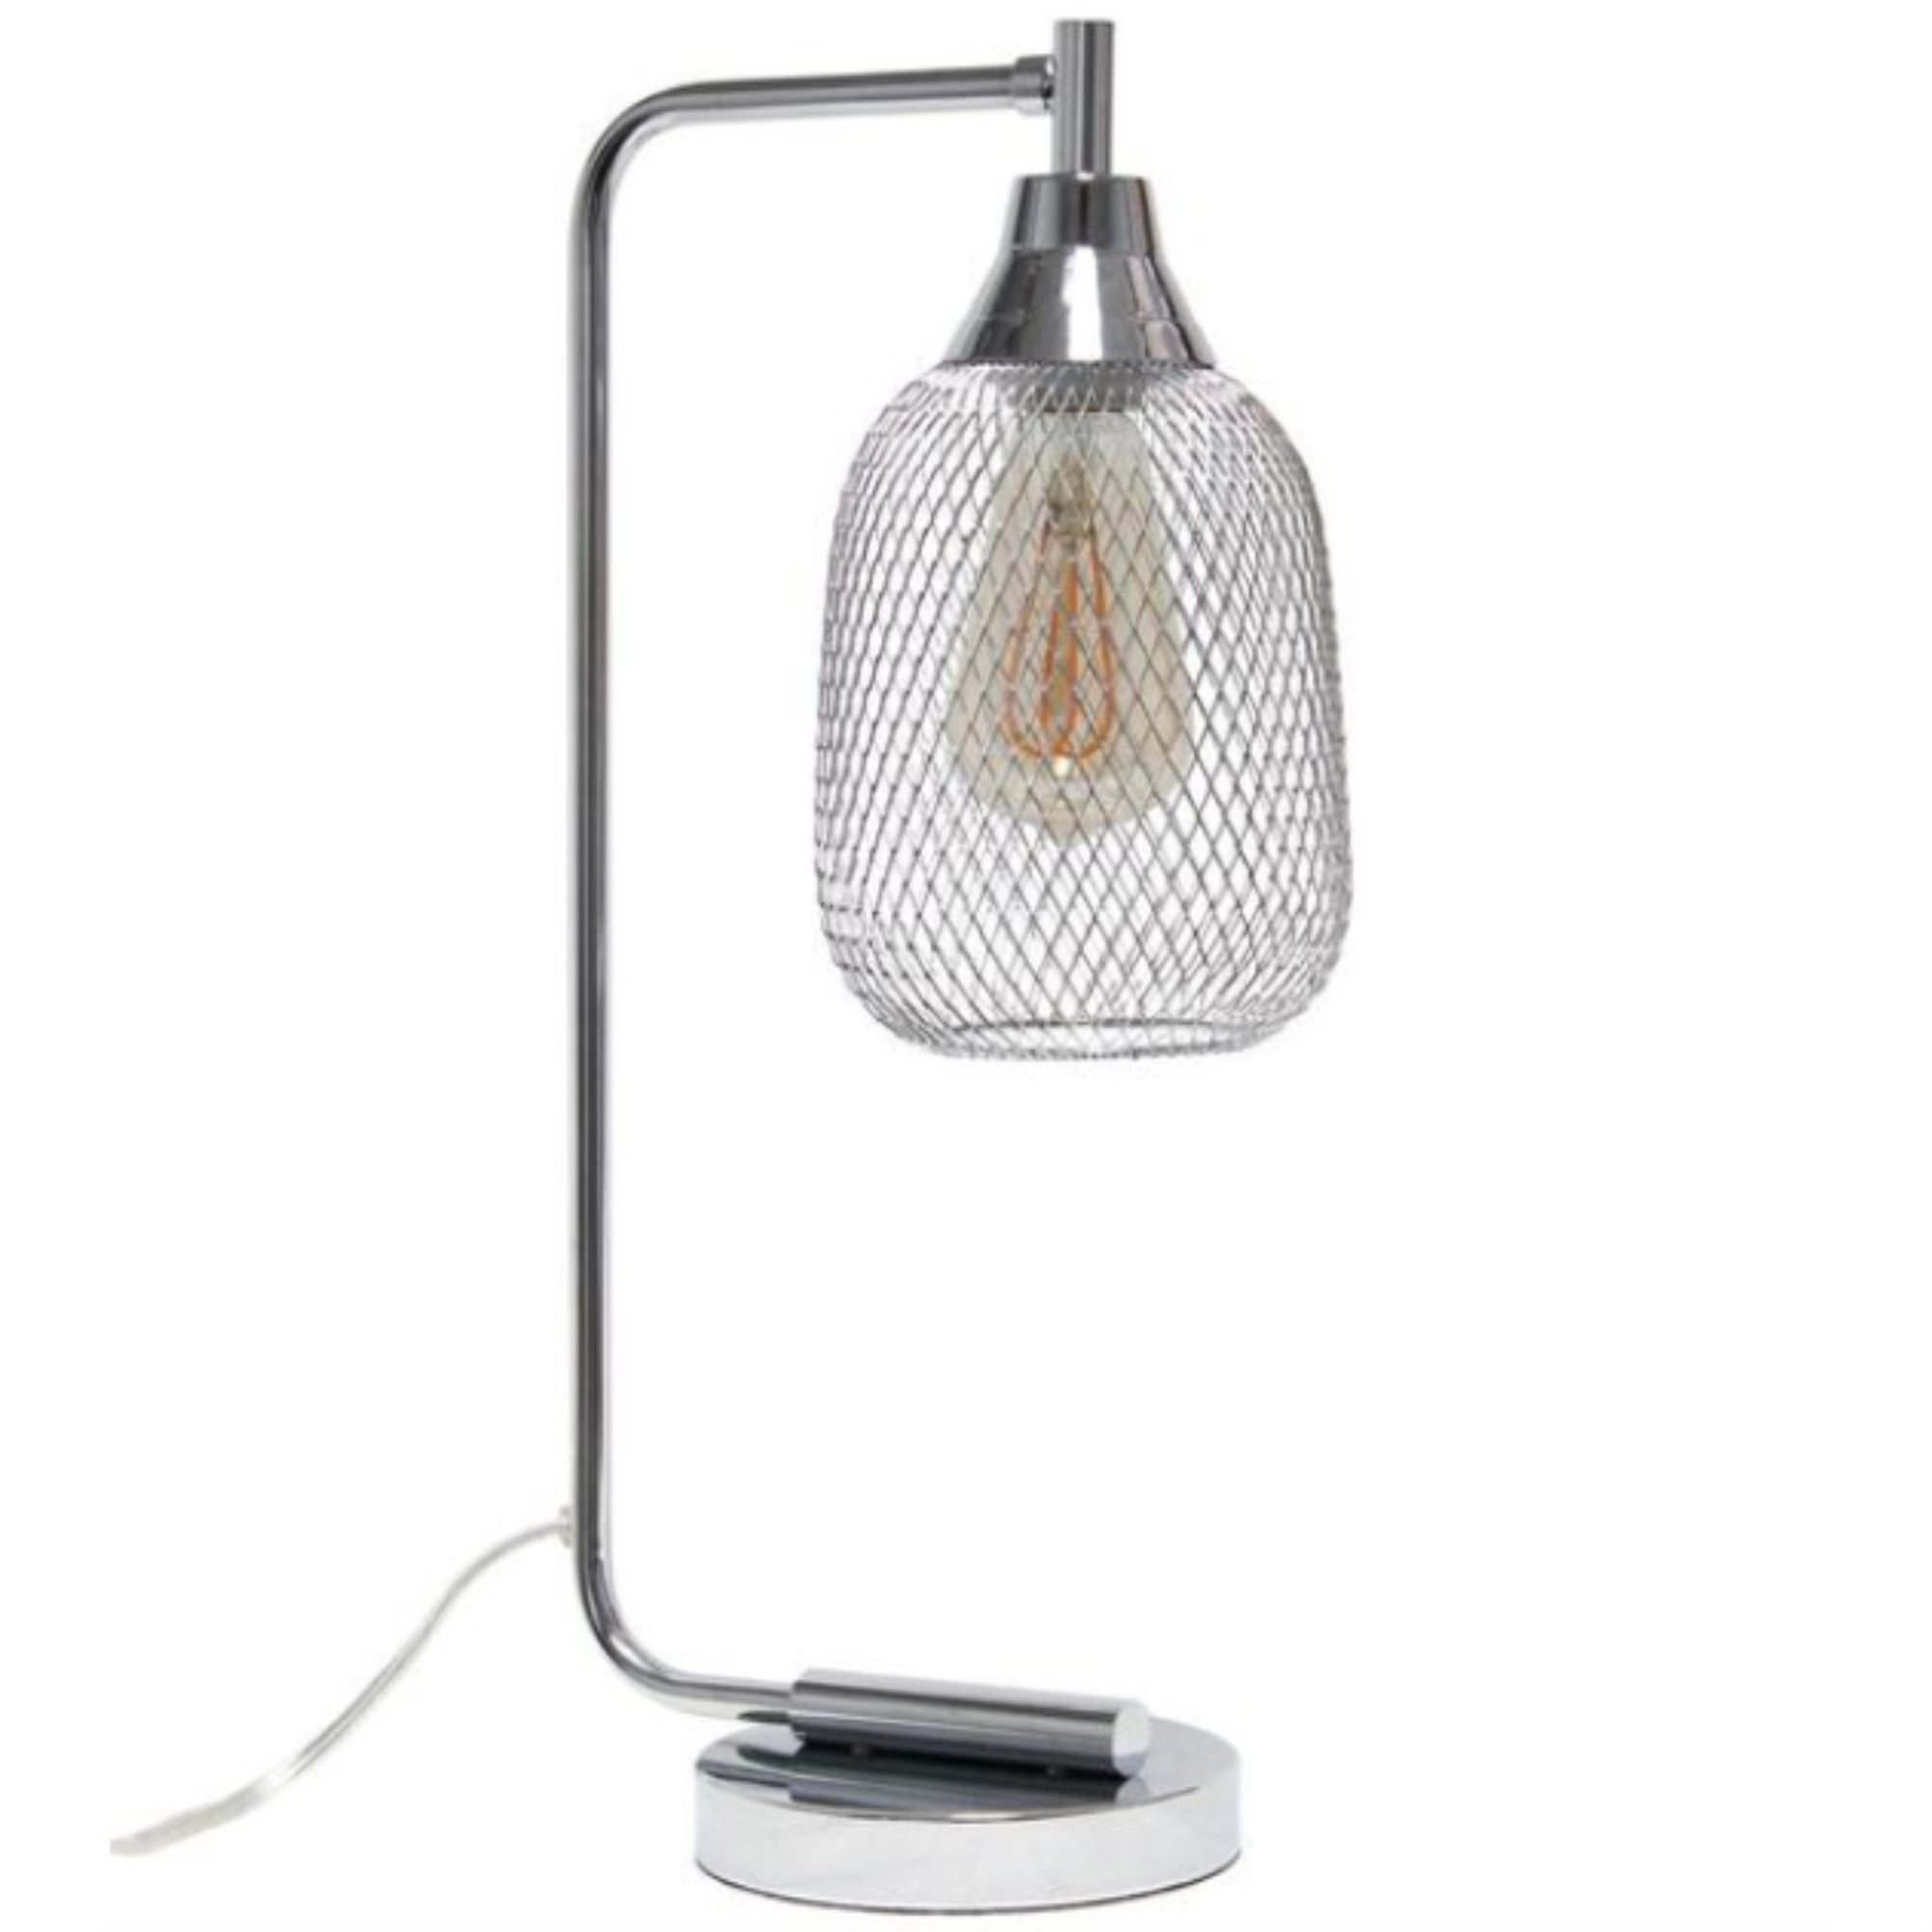 Lalia Home Industrial Mesh Desk Lamp, Chrome